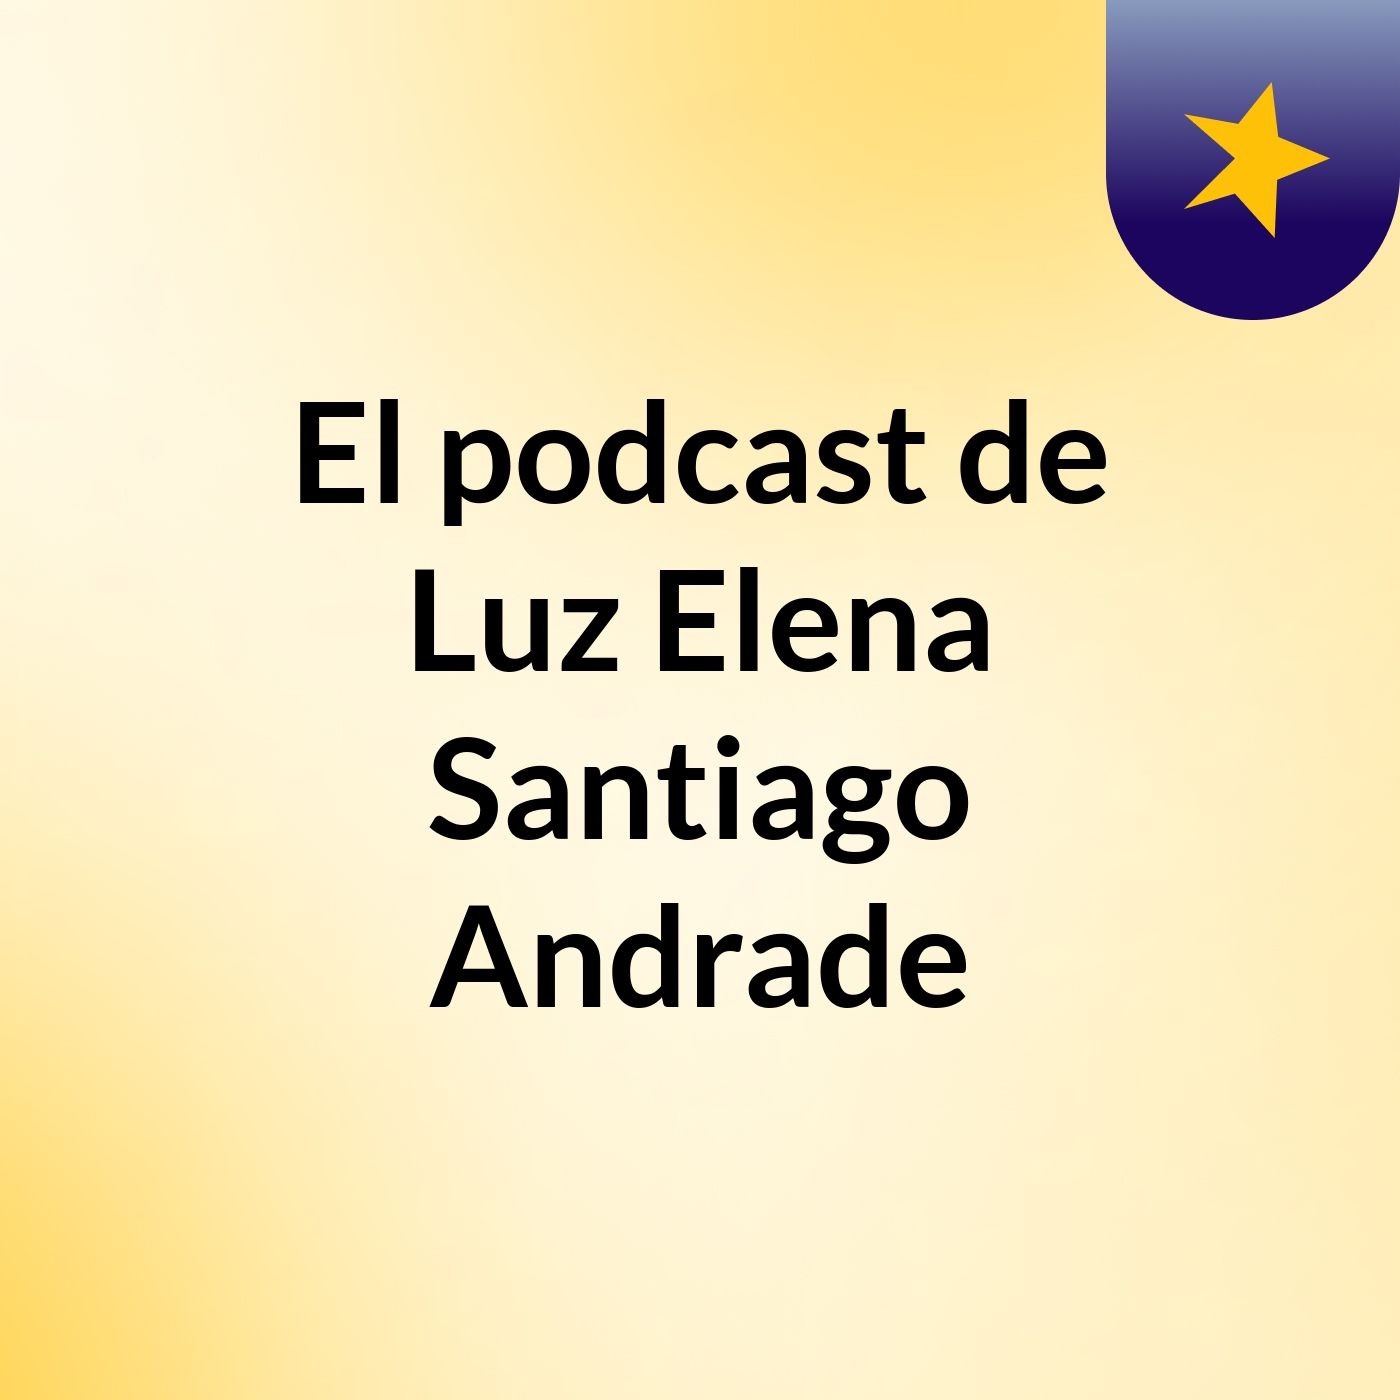 El podcast de Luz Elena Santiago Andrade